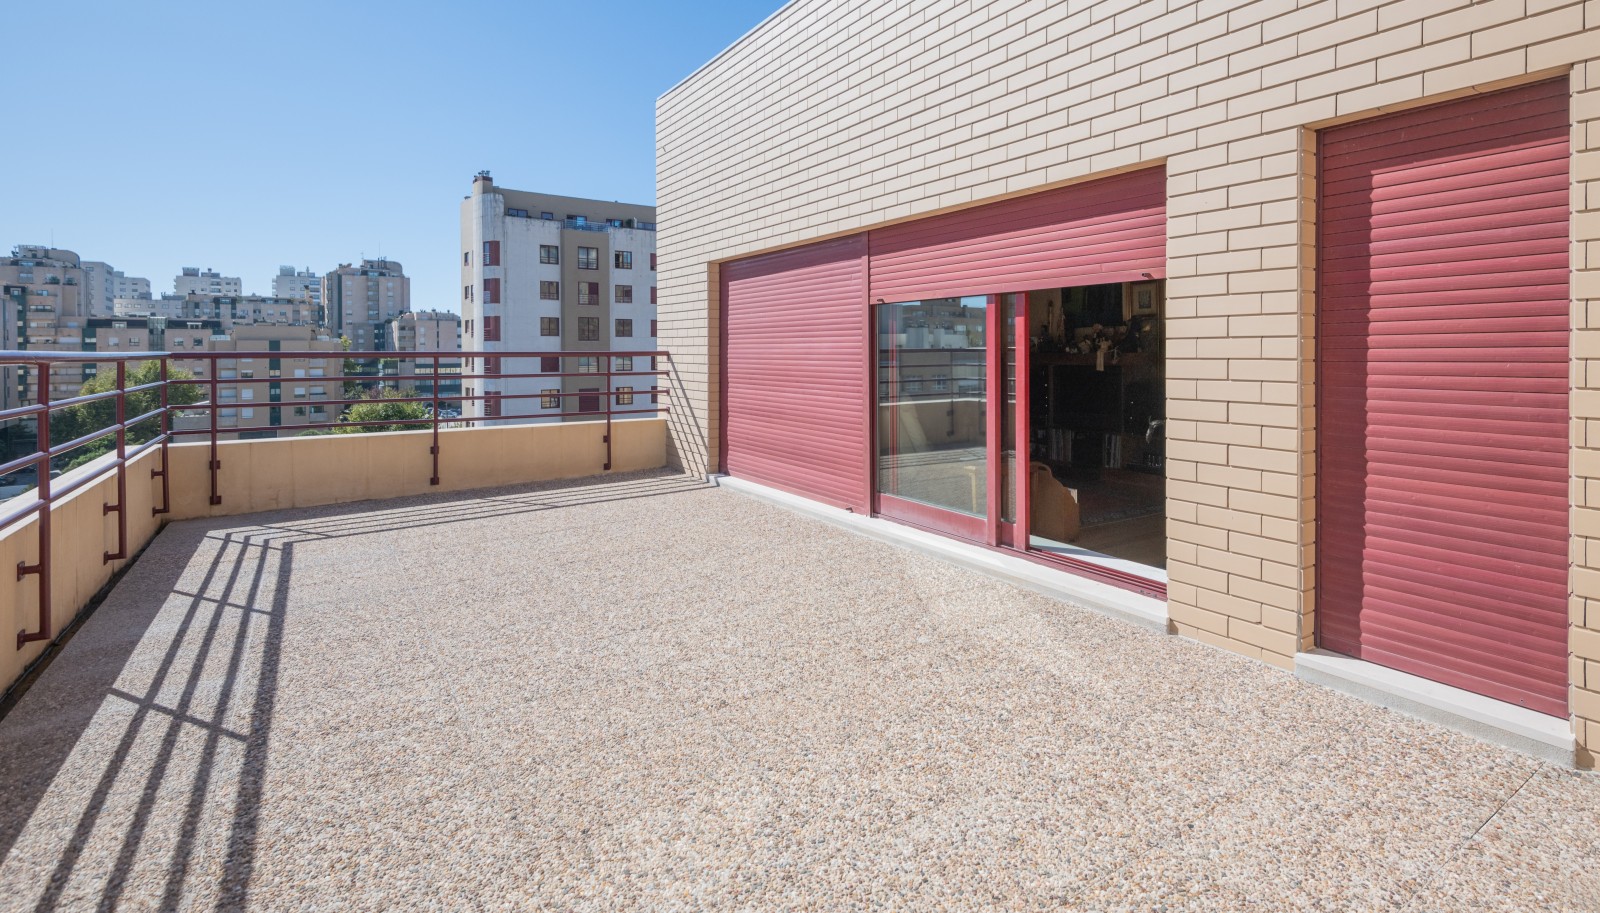 Piso duplex de 4 dormitorios, en venta, en Ramalde, Oporto, Portugal_235533